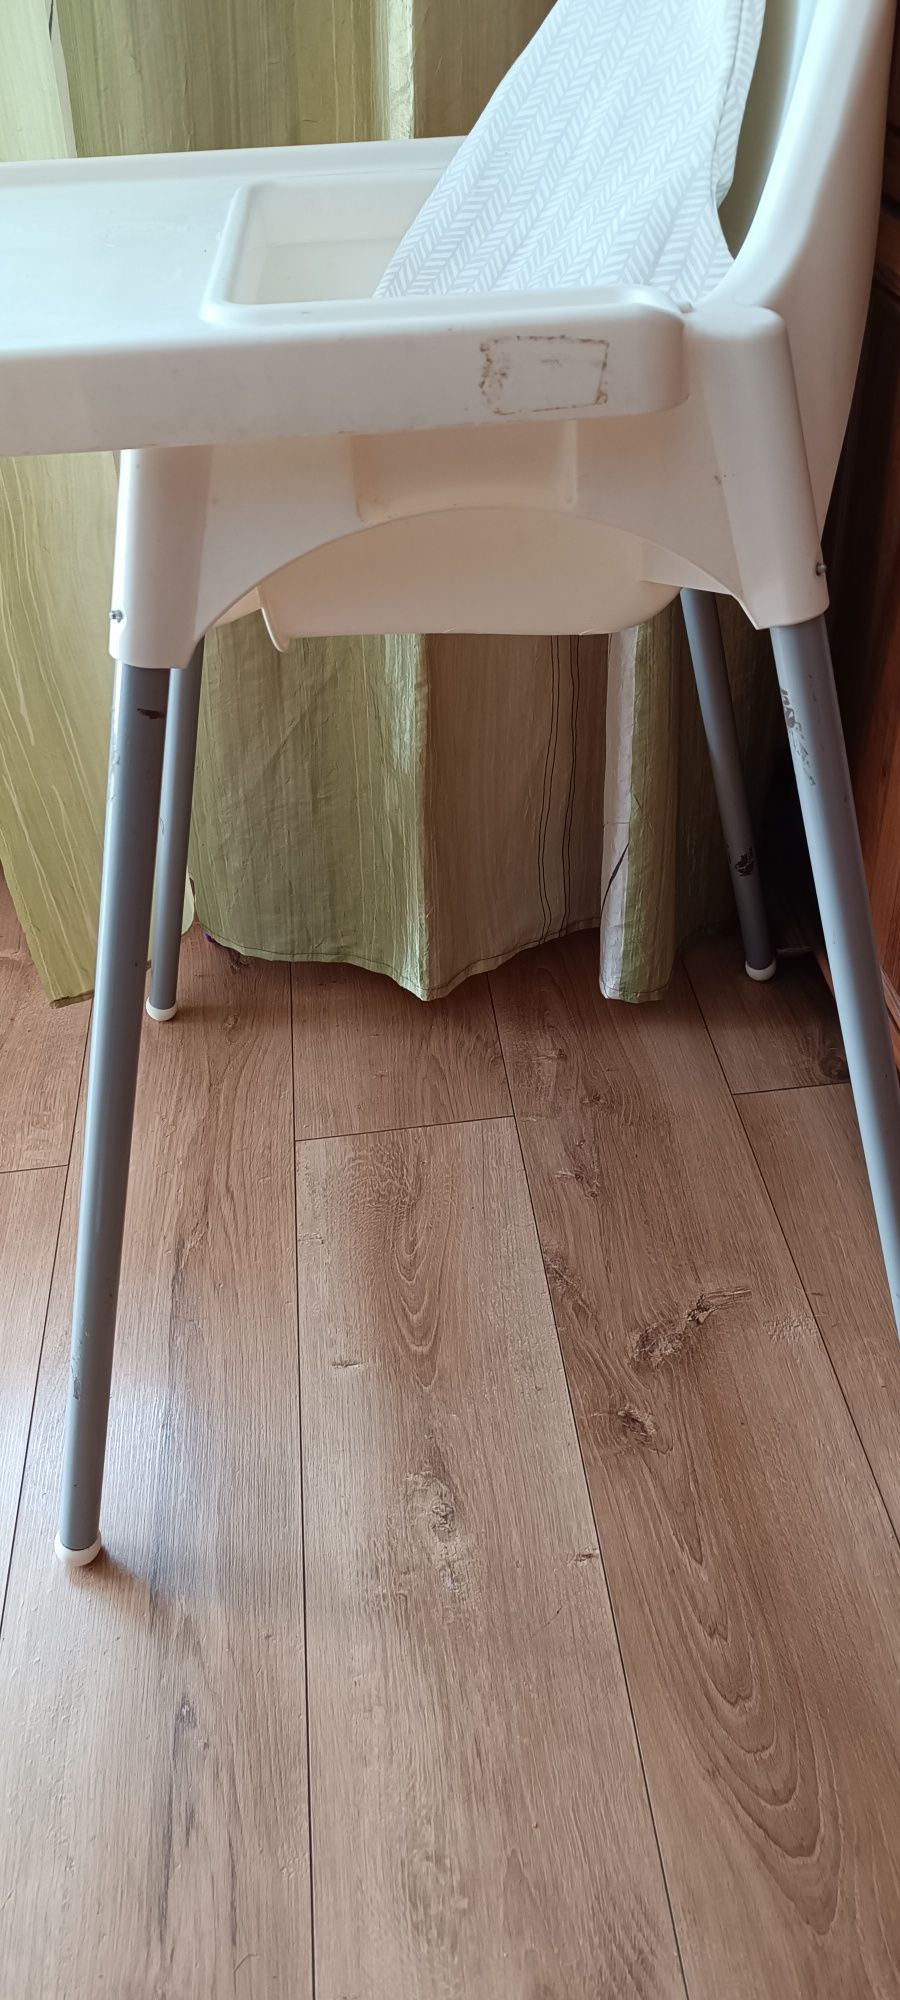 Krzesło antilop IKEA